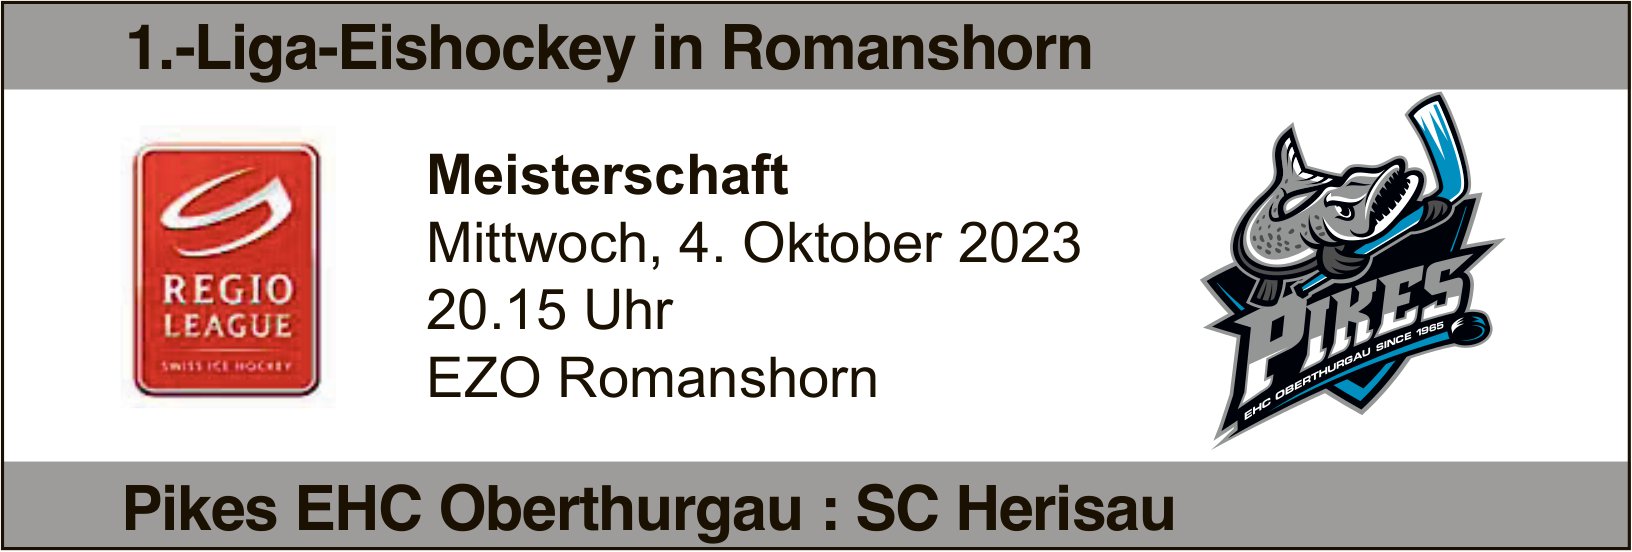 1.-Liga-Eishockey in Romanshorn, 4. Oktober, EZO Romanshorn, Romanshorn